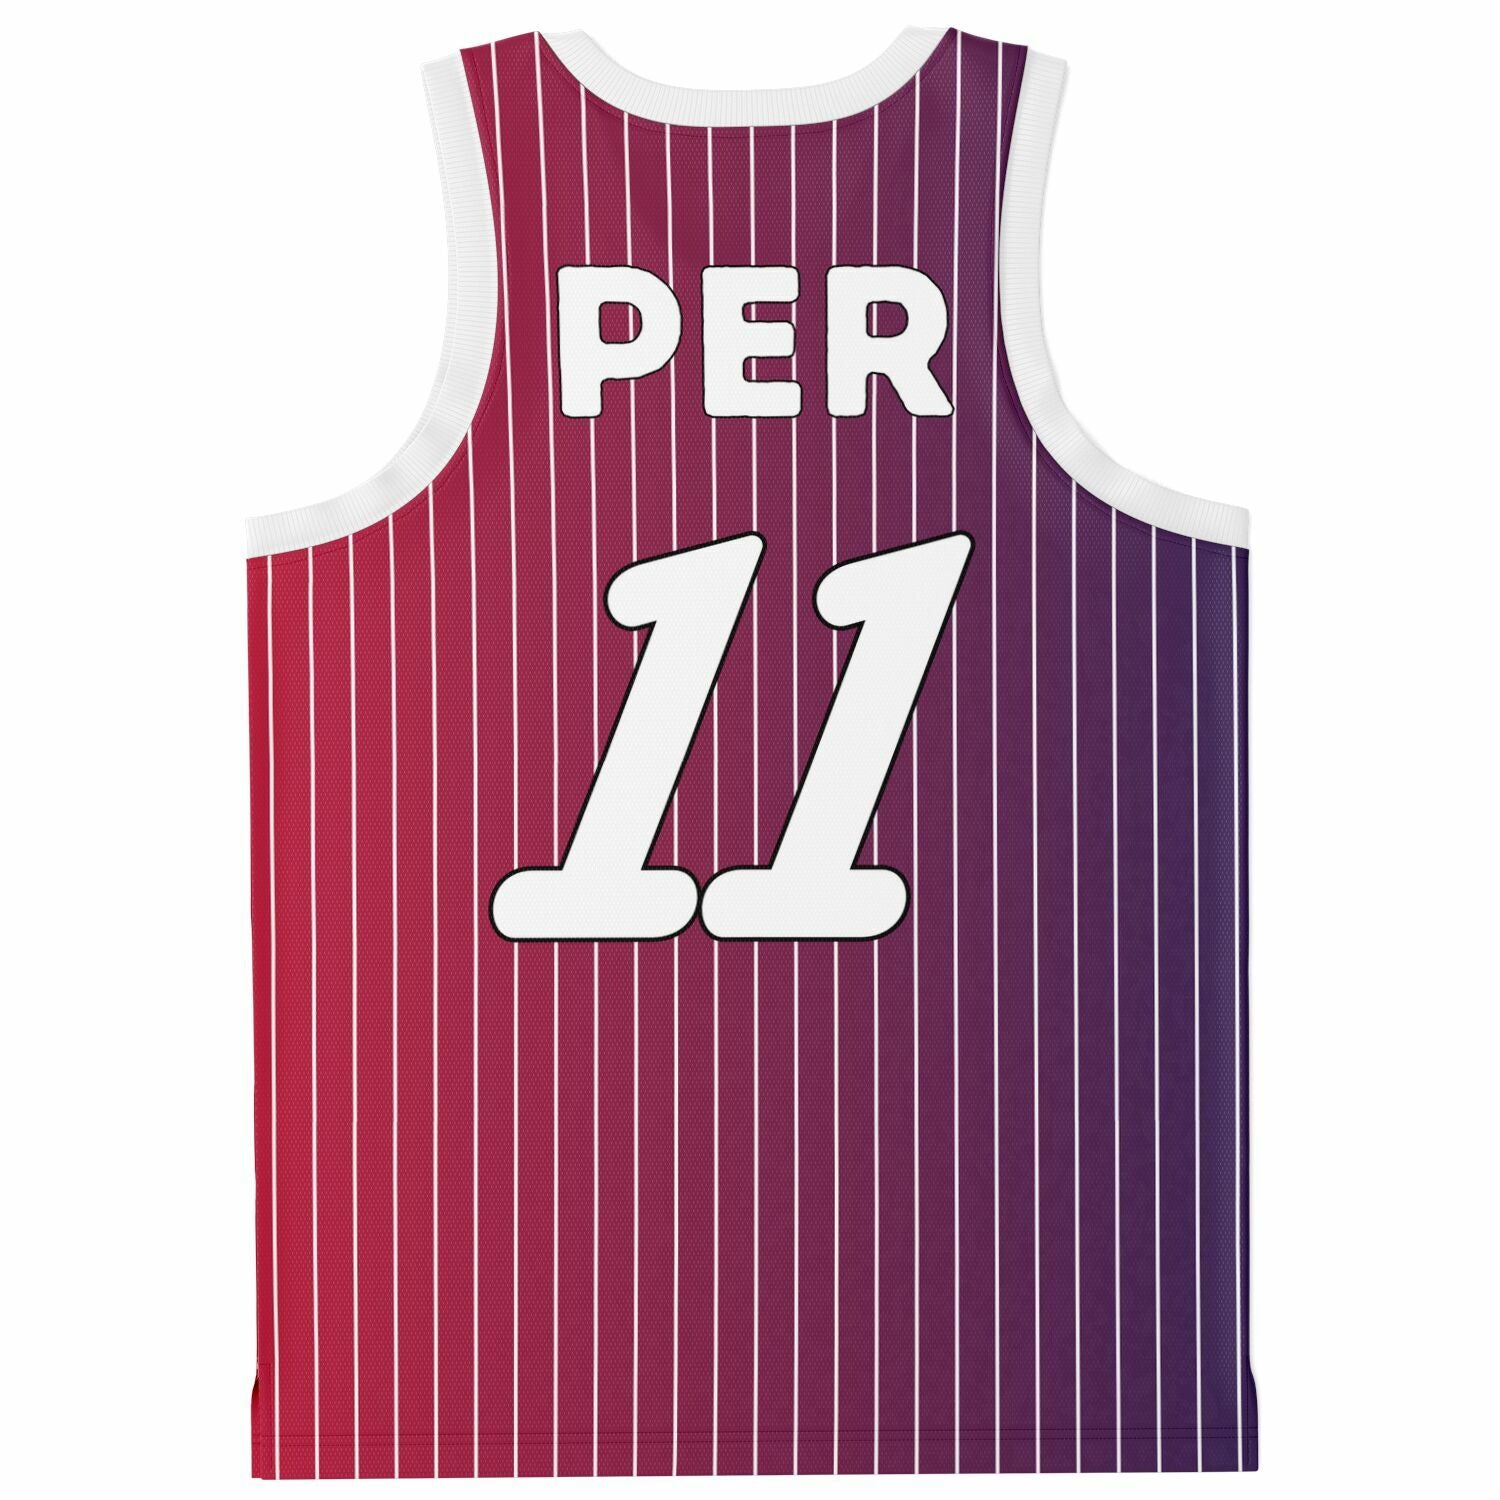 PER11 Pinstripe Basketball Jersey - FormulaFanatics